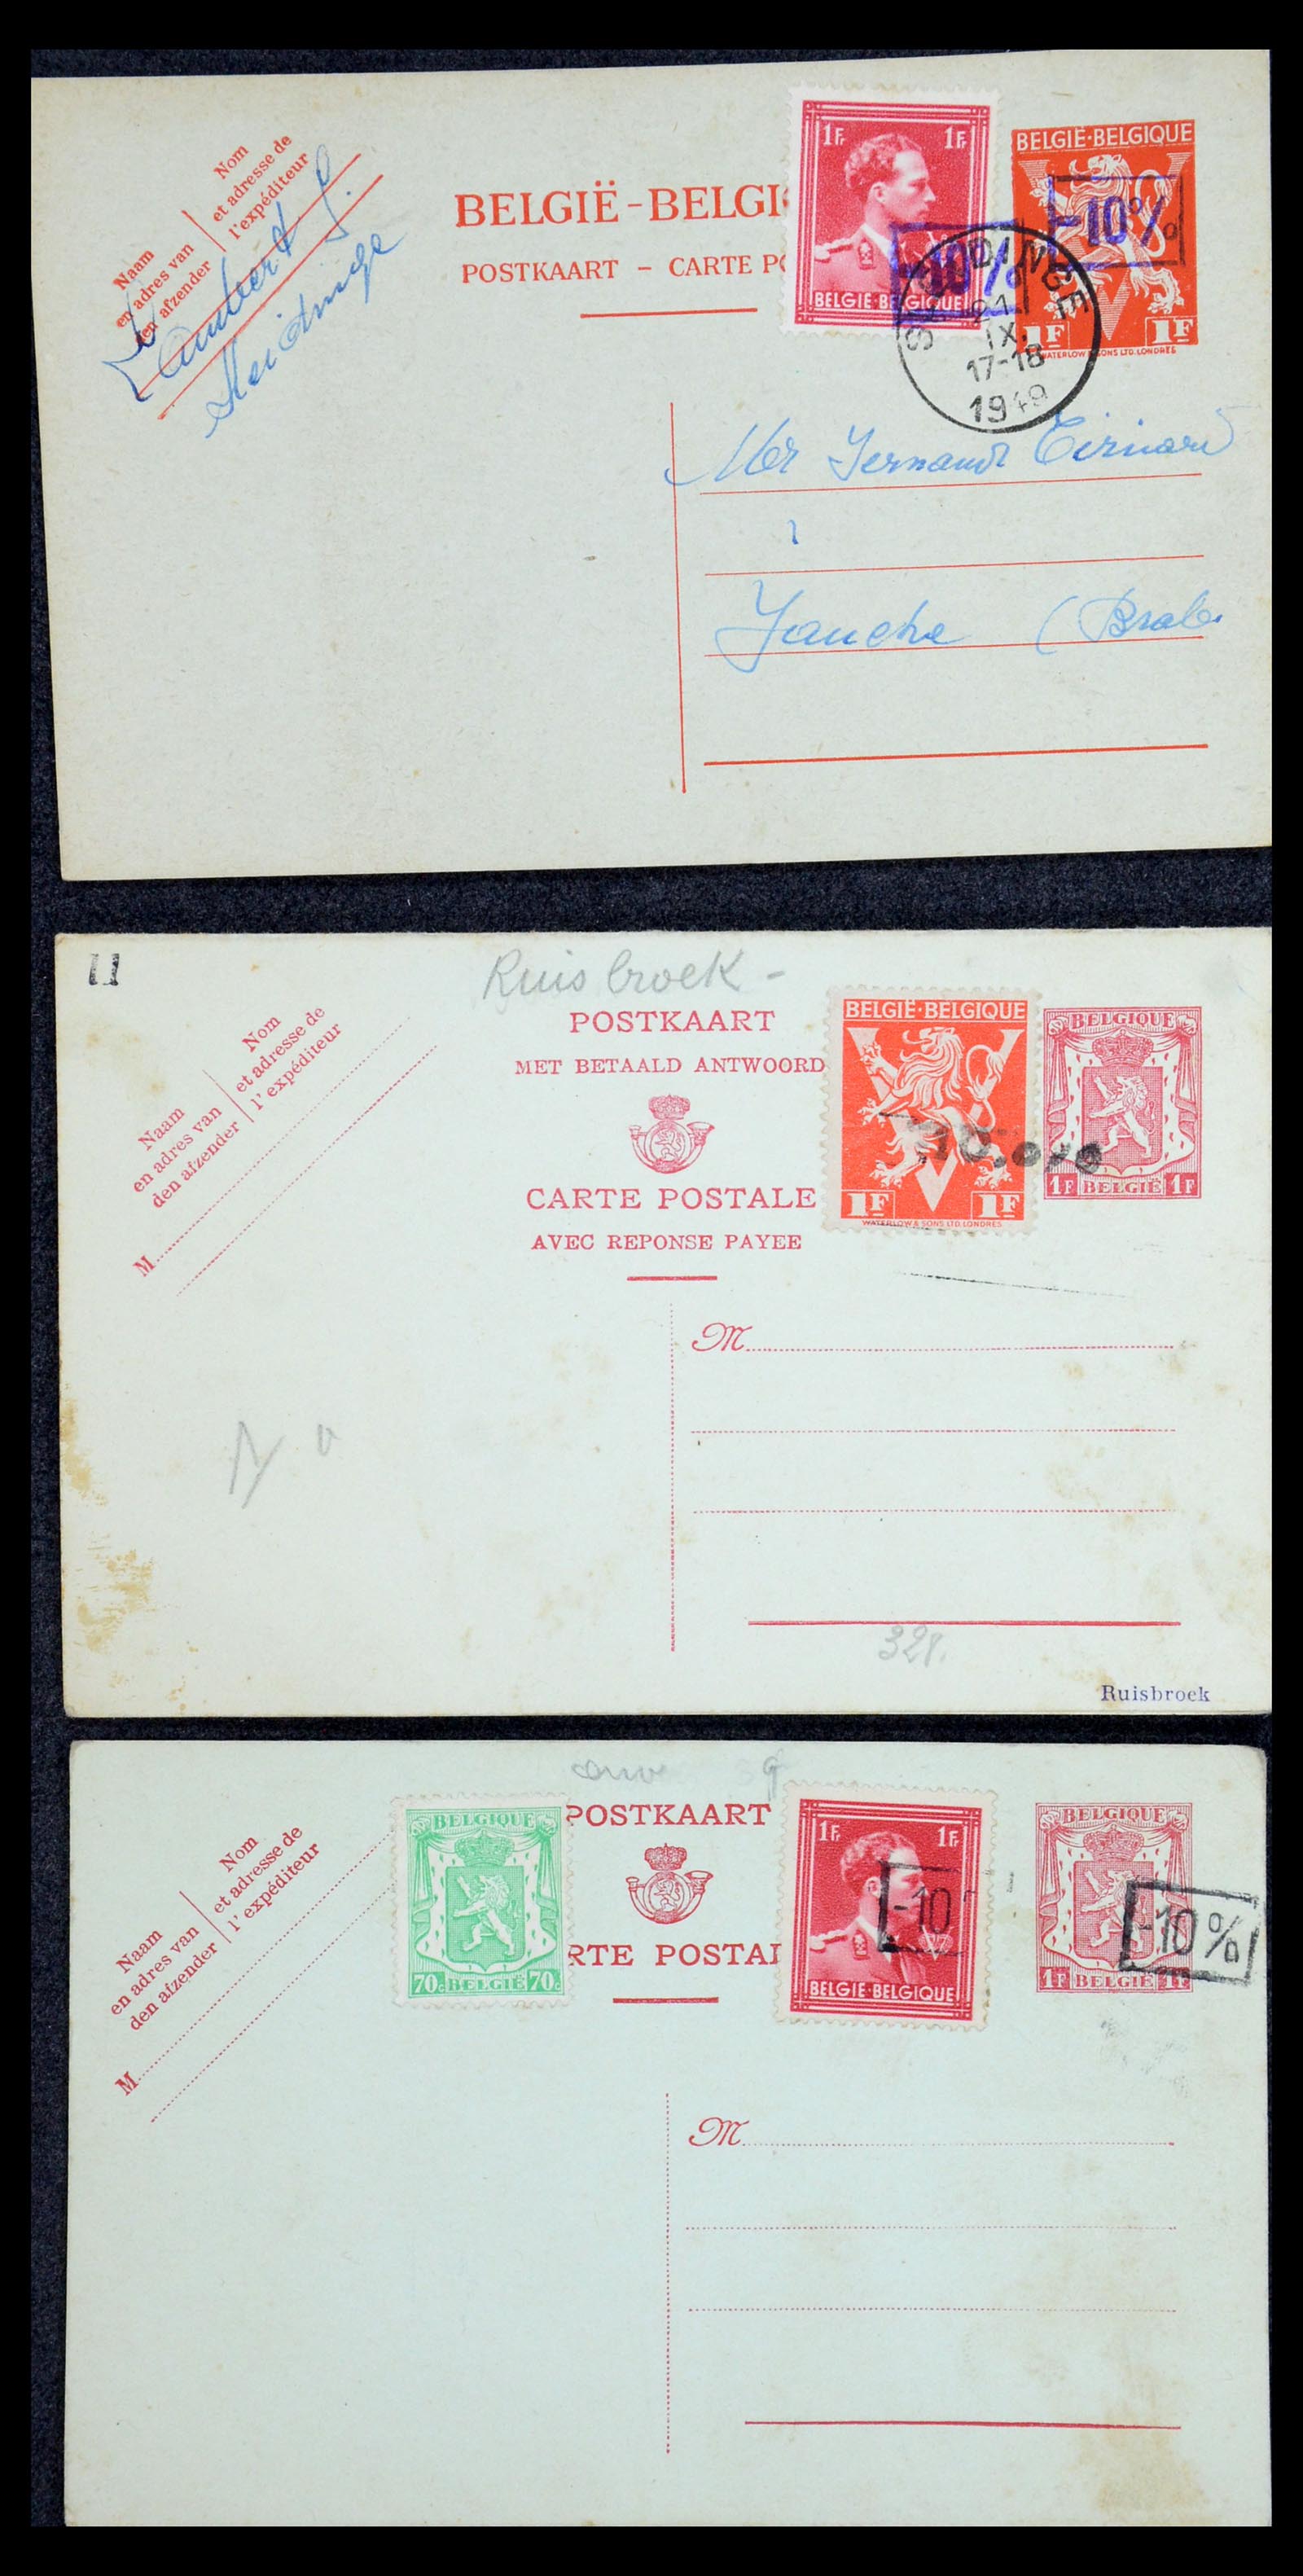 35733 205 - Stamp Collection 35733 Belgium 1946 -10% overprints.